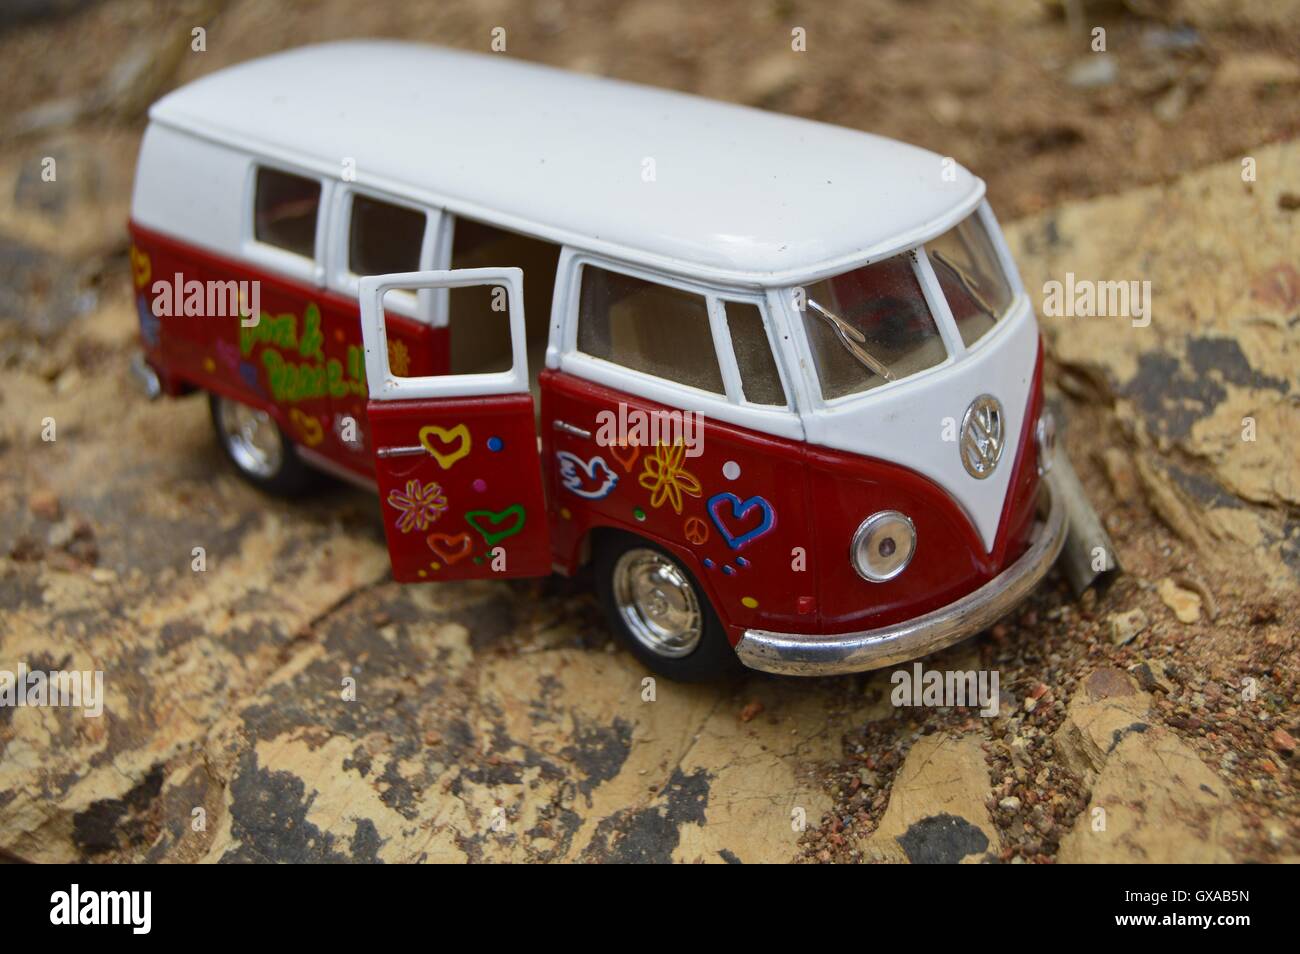 Classico Tedesco furgoni, giocattolo sul terreno roccioso. Il bianco e il rosso van nella nuda terra. Foto Stock